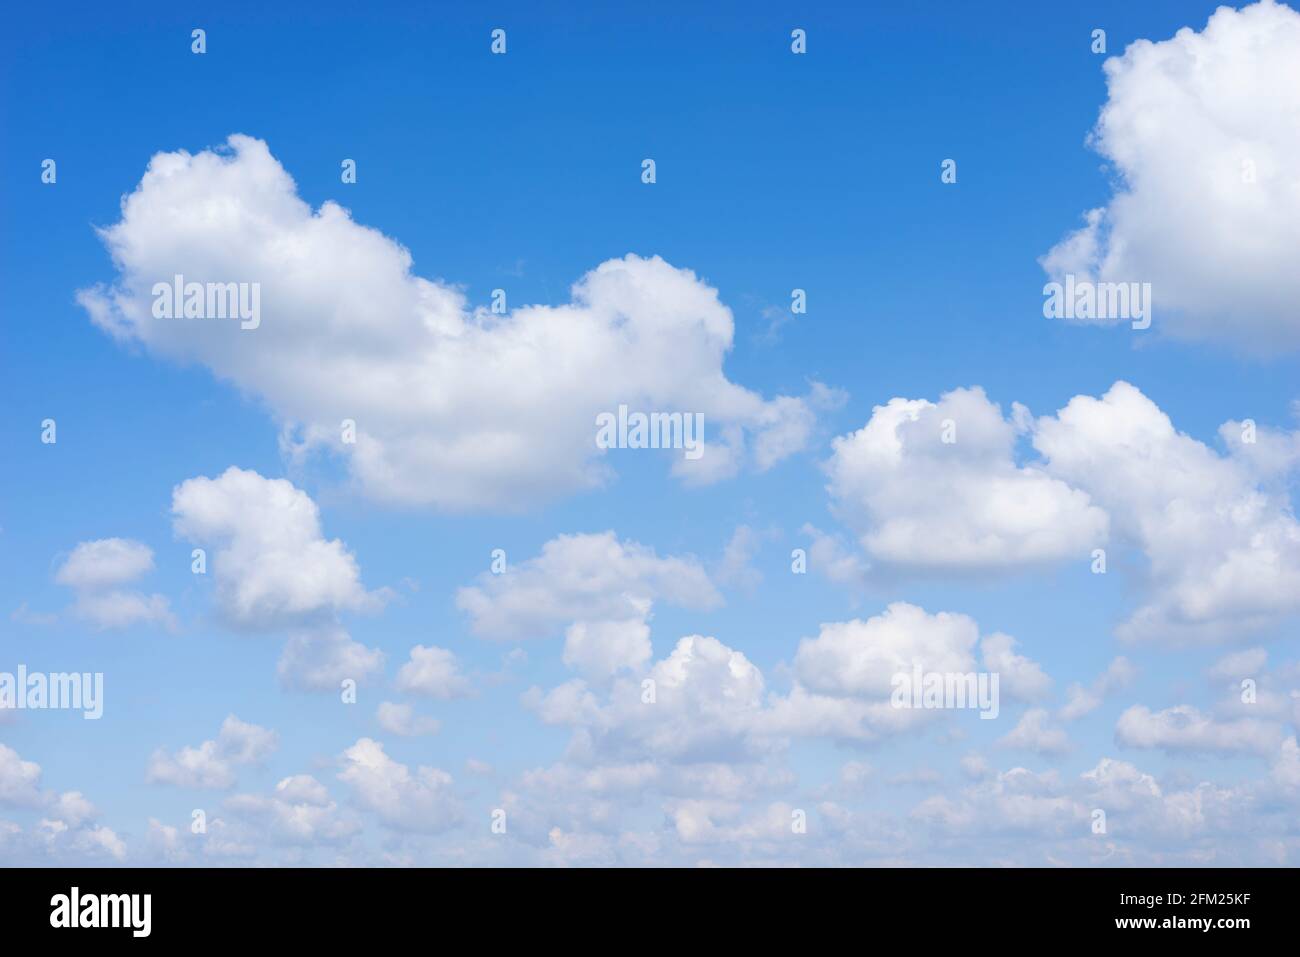 Cumulus nublas en un cielo azul con nubes blancas y esponjosas fondo blanco nubes azul cielo blanco nubes sólo reino unido Foto de stock